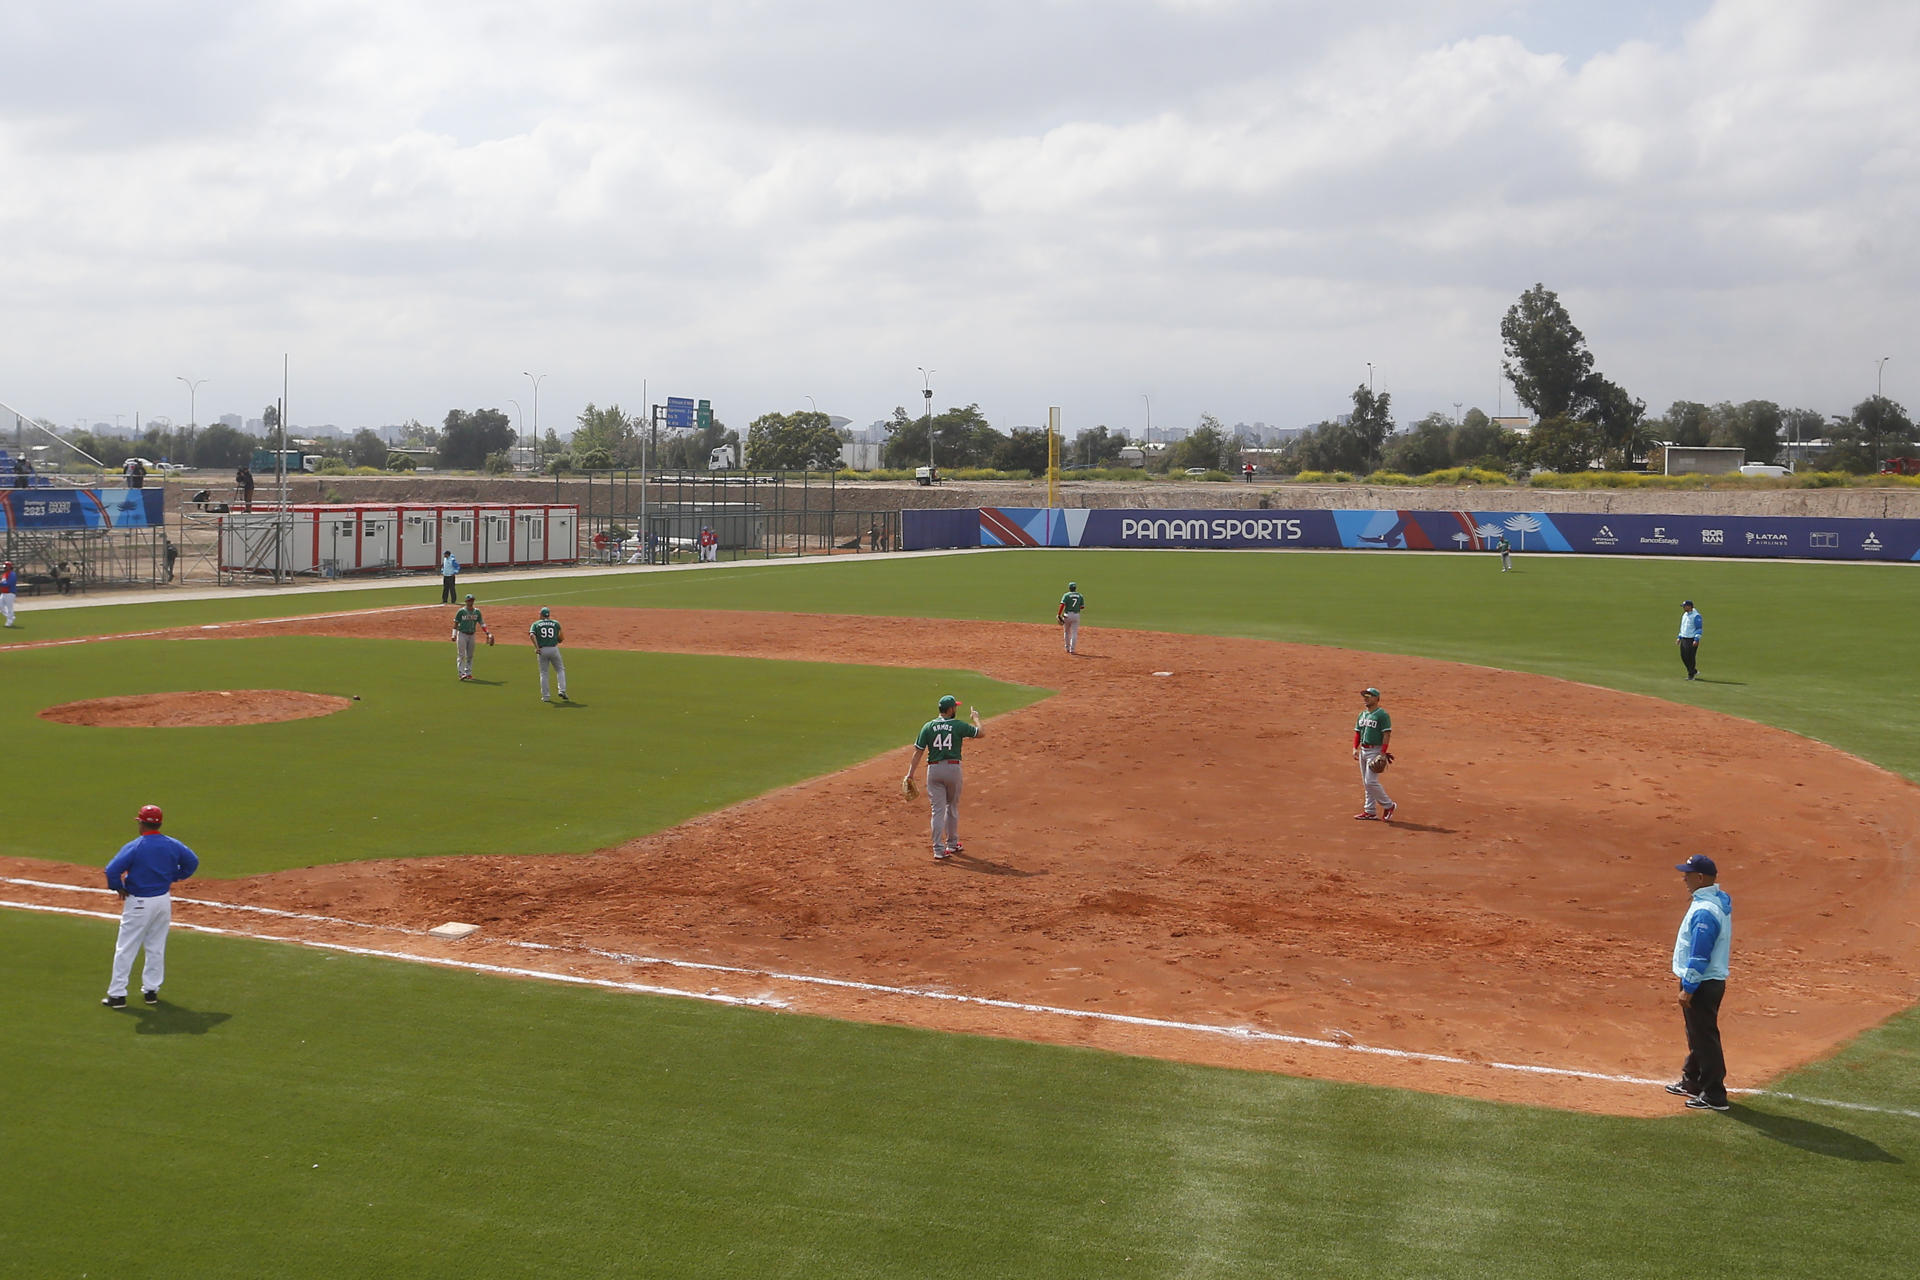 Campionat Beisbol a València - El periòdic valencià